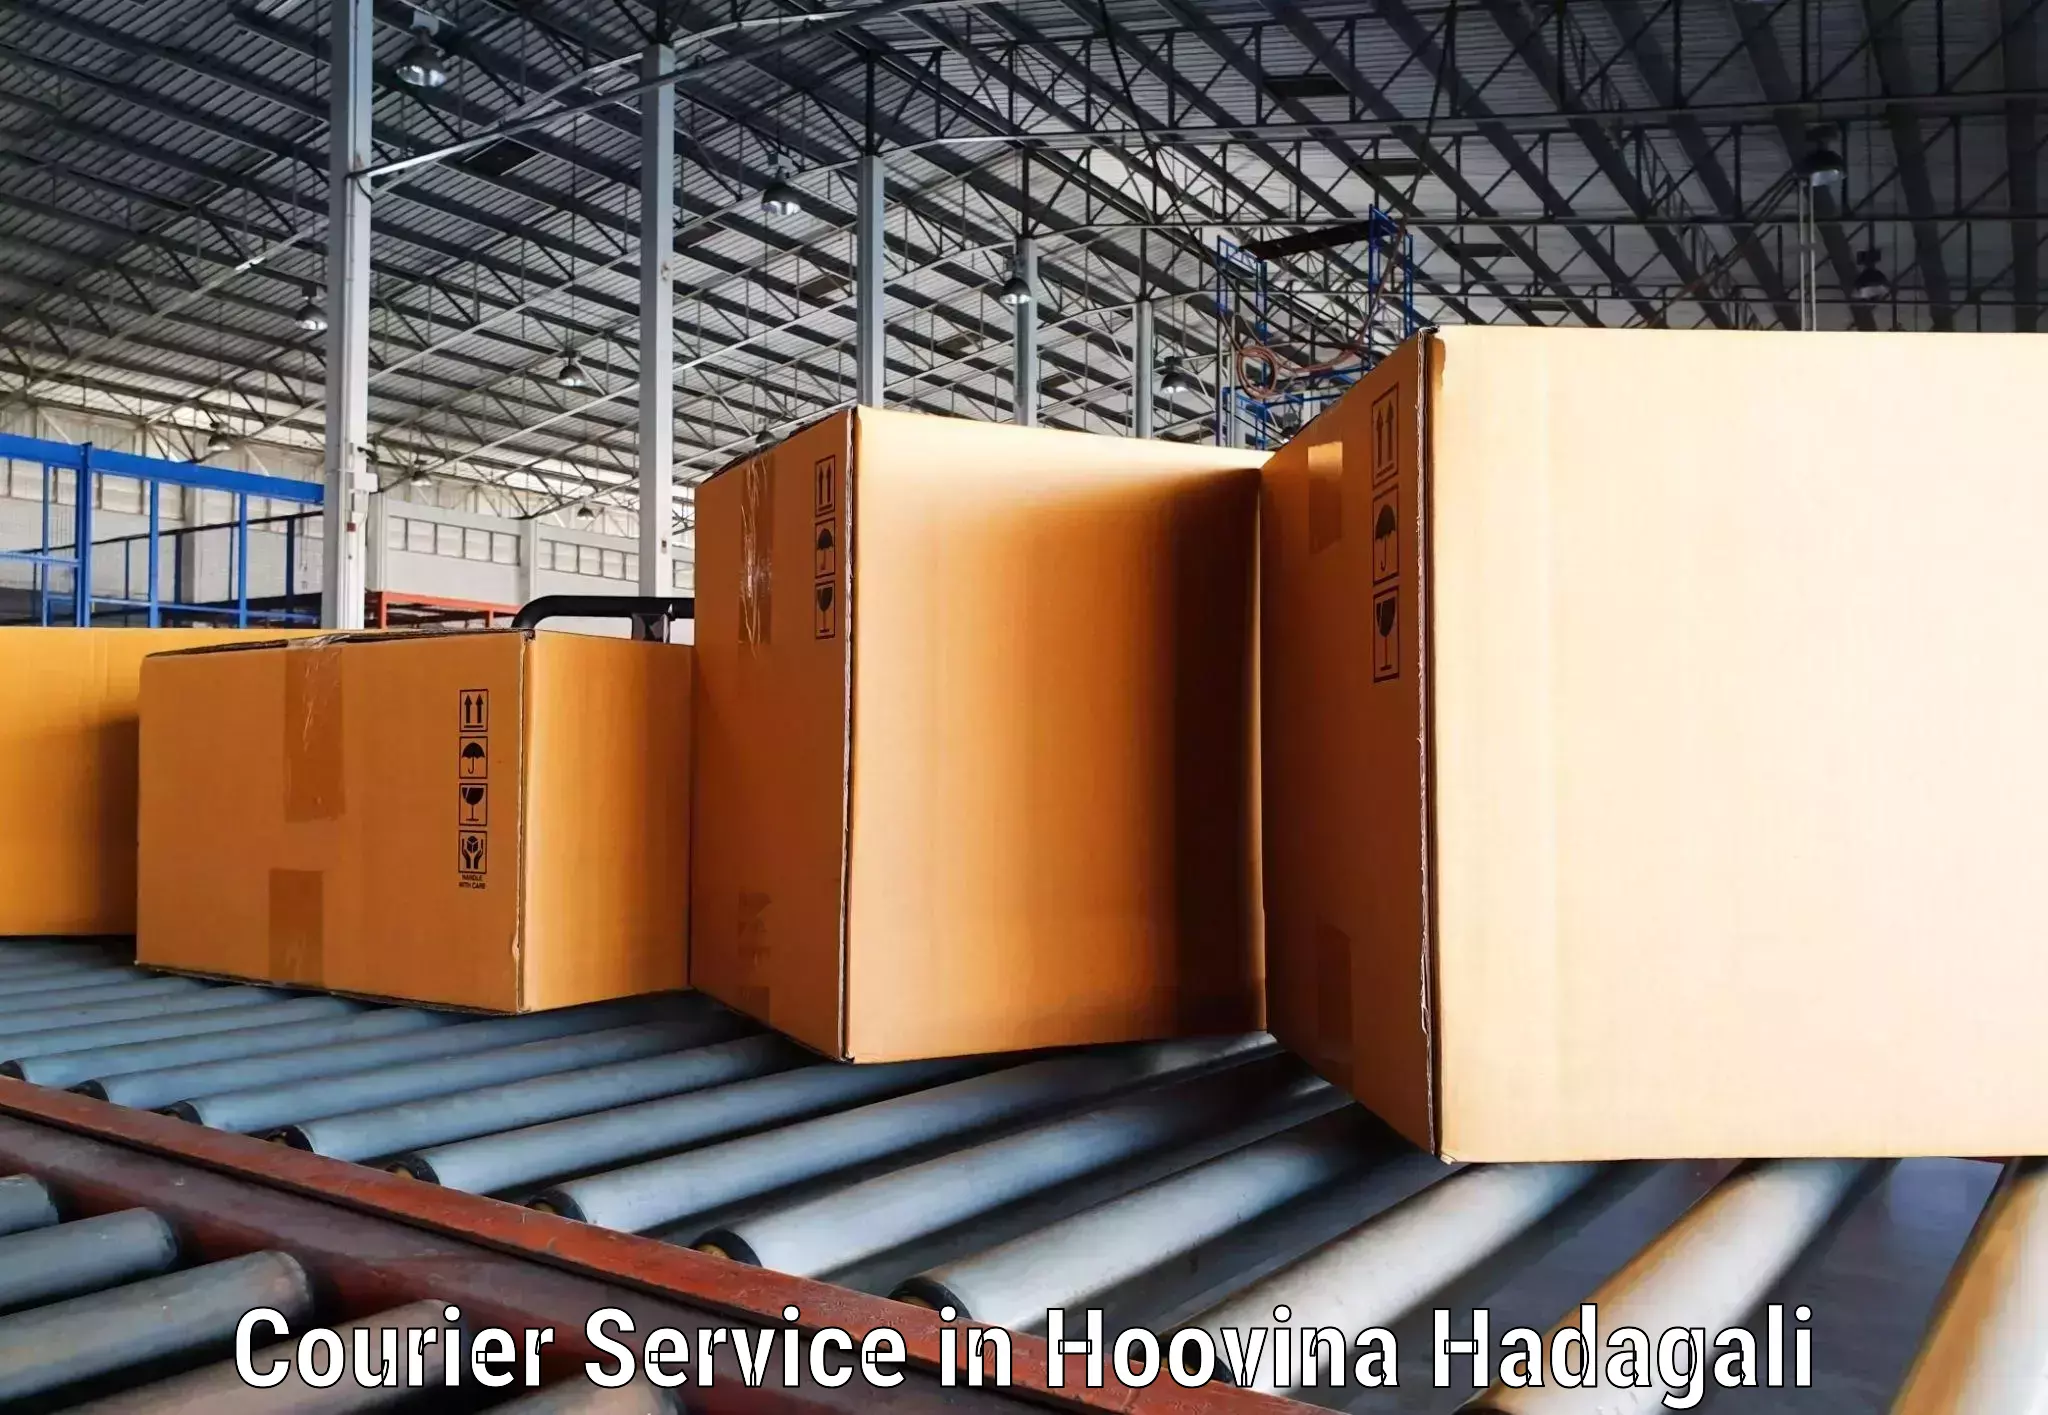 Efficient cargo services in Hoovina Hadagali